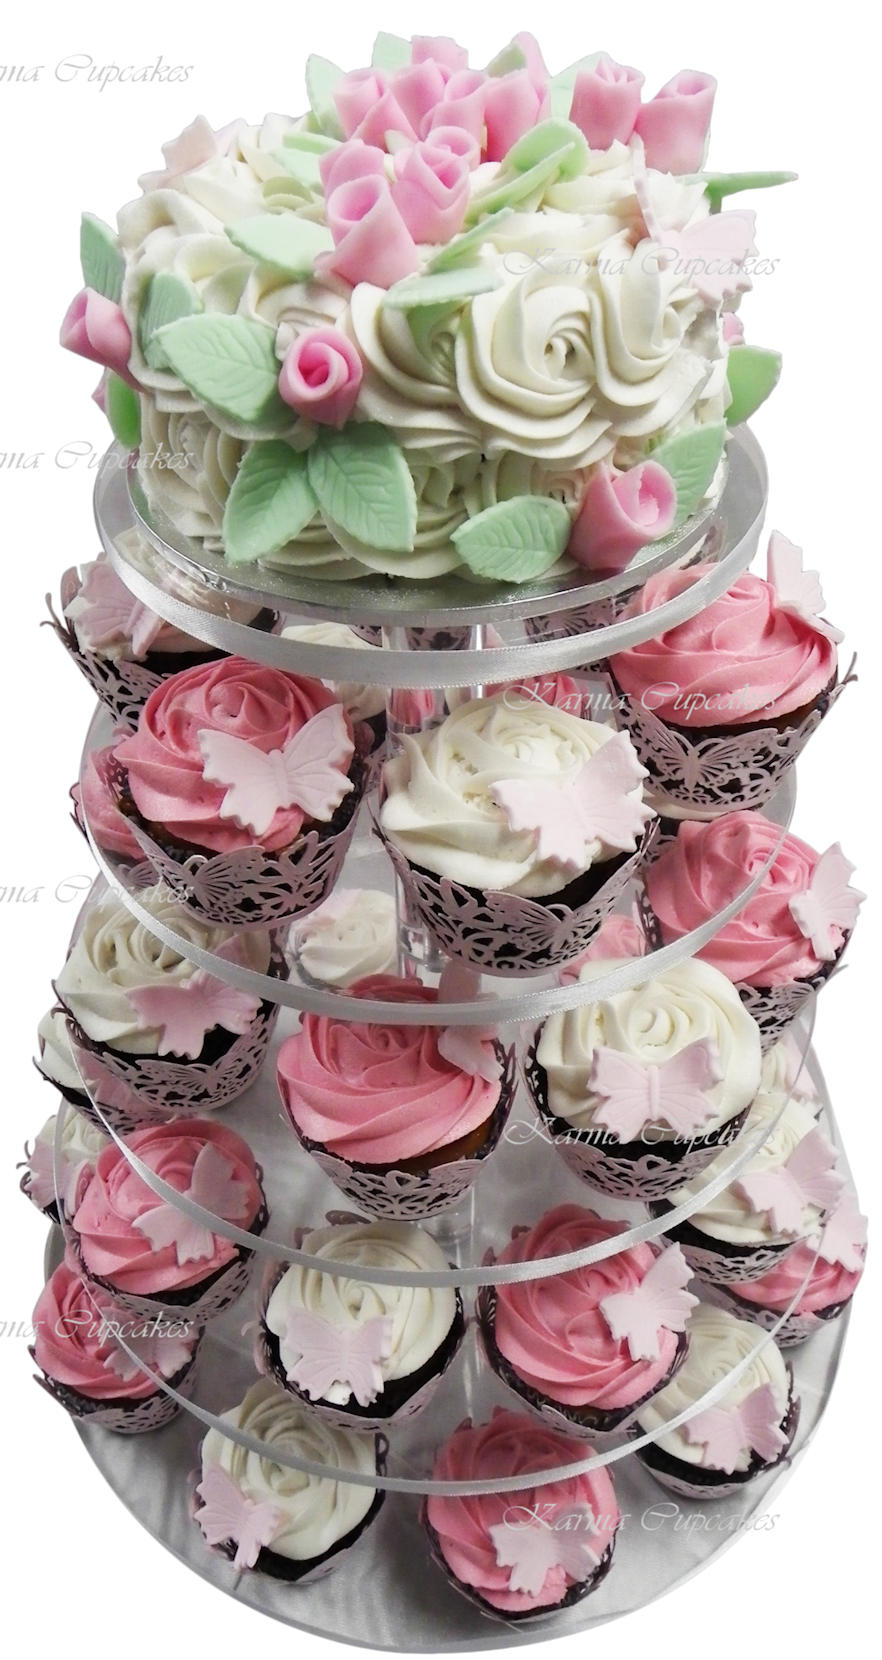 Rose swirl pink white green cupcake tower copy